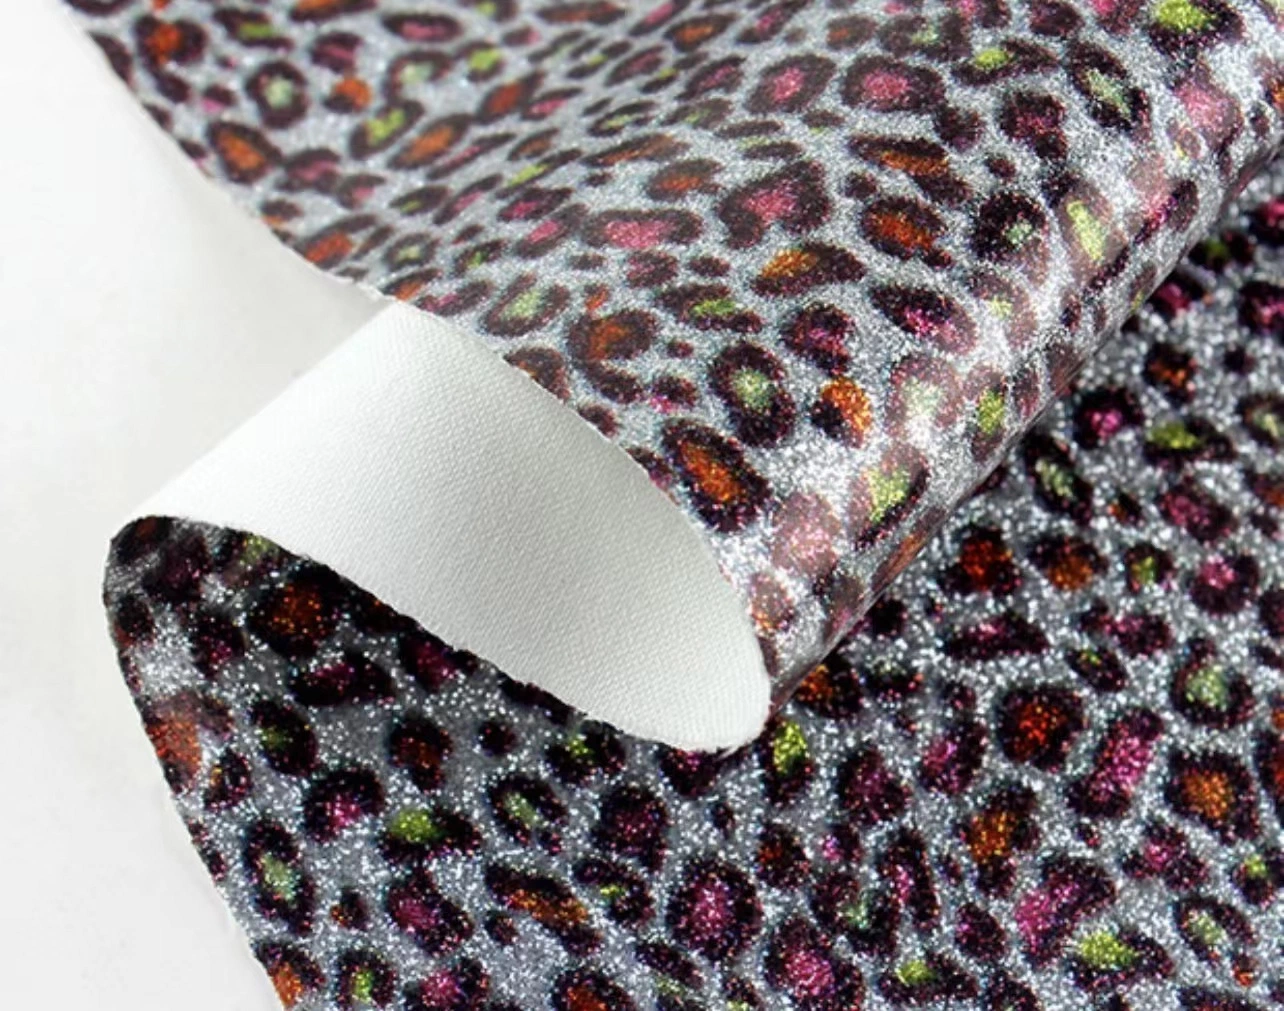 Las normas ambientales de la UE Glitter Glitter Glitter Color leopardo cuero pu color suave la cebolla en polvo de siete la impresión de leopardo de tejido de equipaje Material Artific zapatos